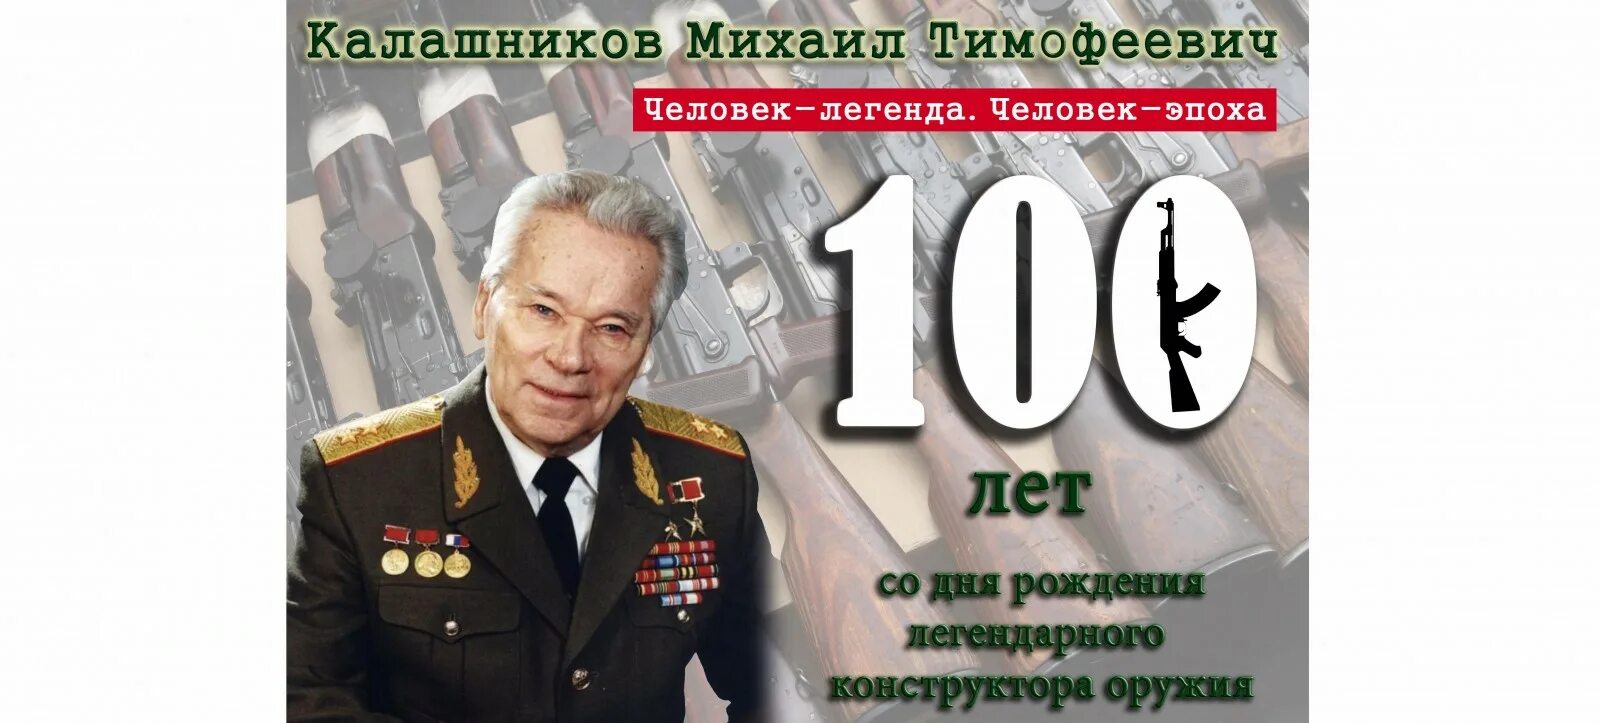 Презентация 100 лет со дня рождения. День рождения Калашникова 100 лет. 100 Лет со дня рождения.